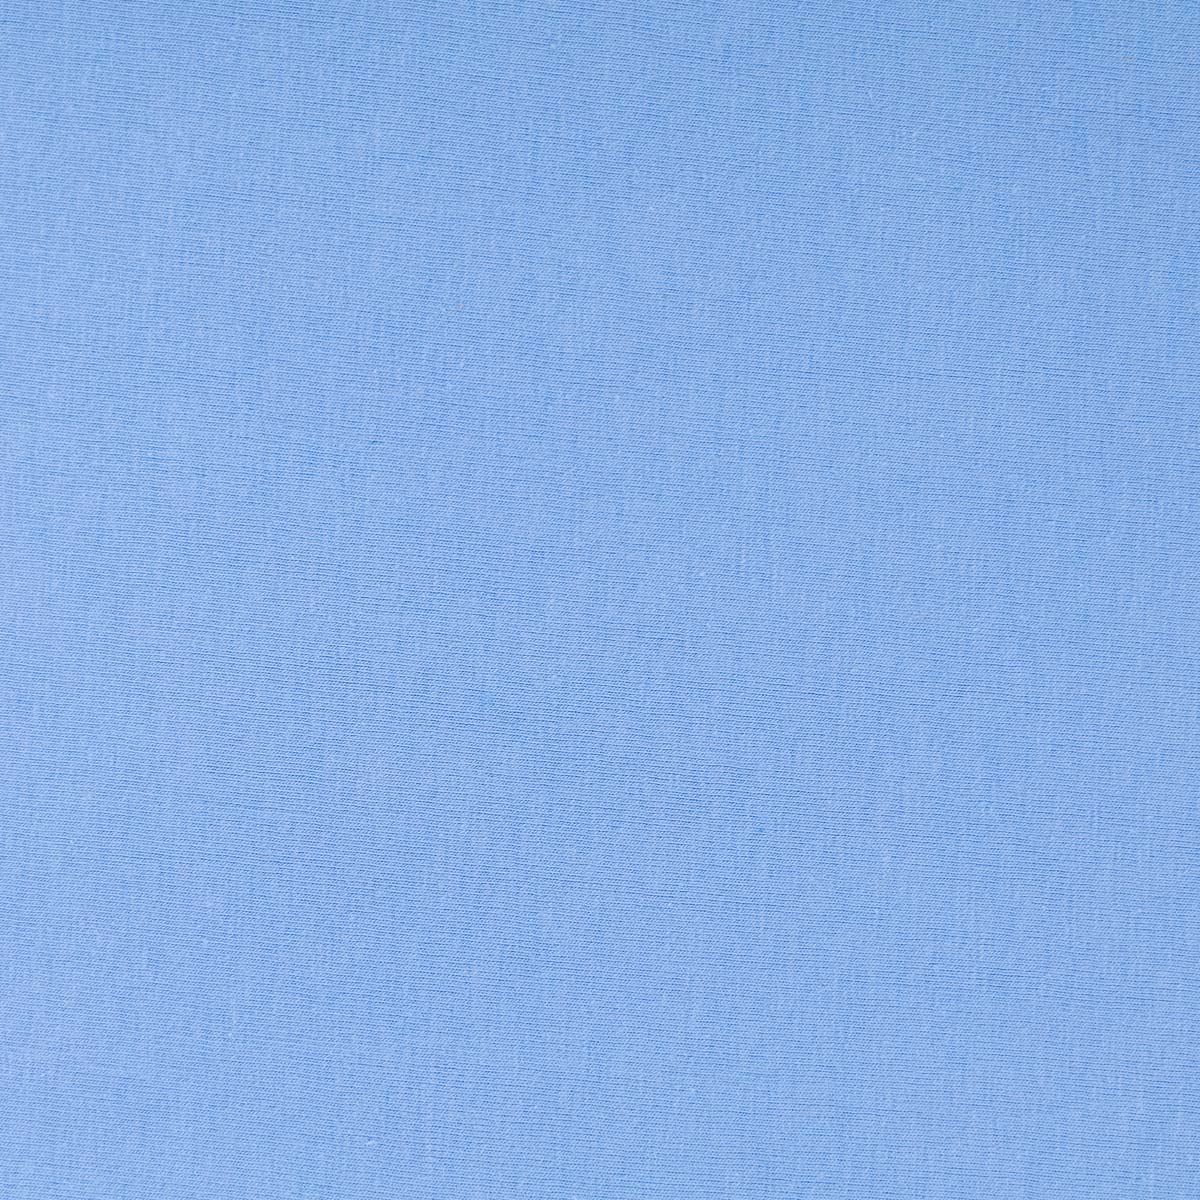 Простыня натяжная 2-спальная Pappel 180x220см, цвет светло-голубой Pappel 180220-35/Light Blue 21 180220-35/Light Blue 21 - фото 2